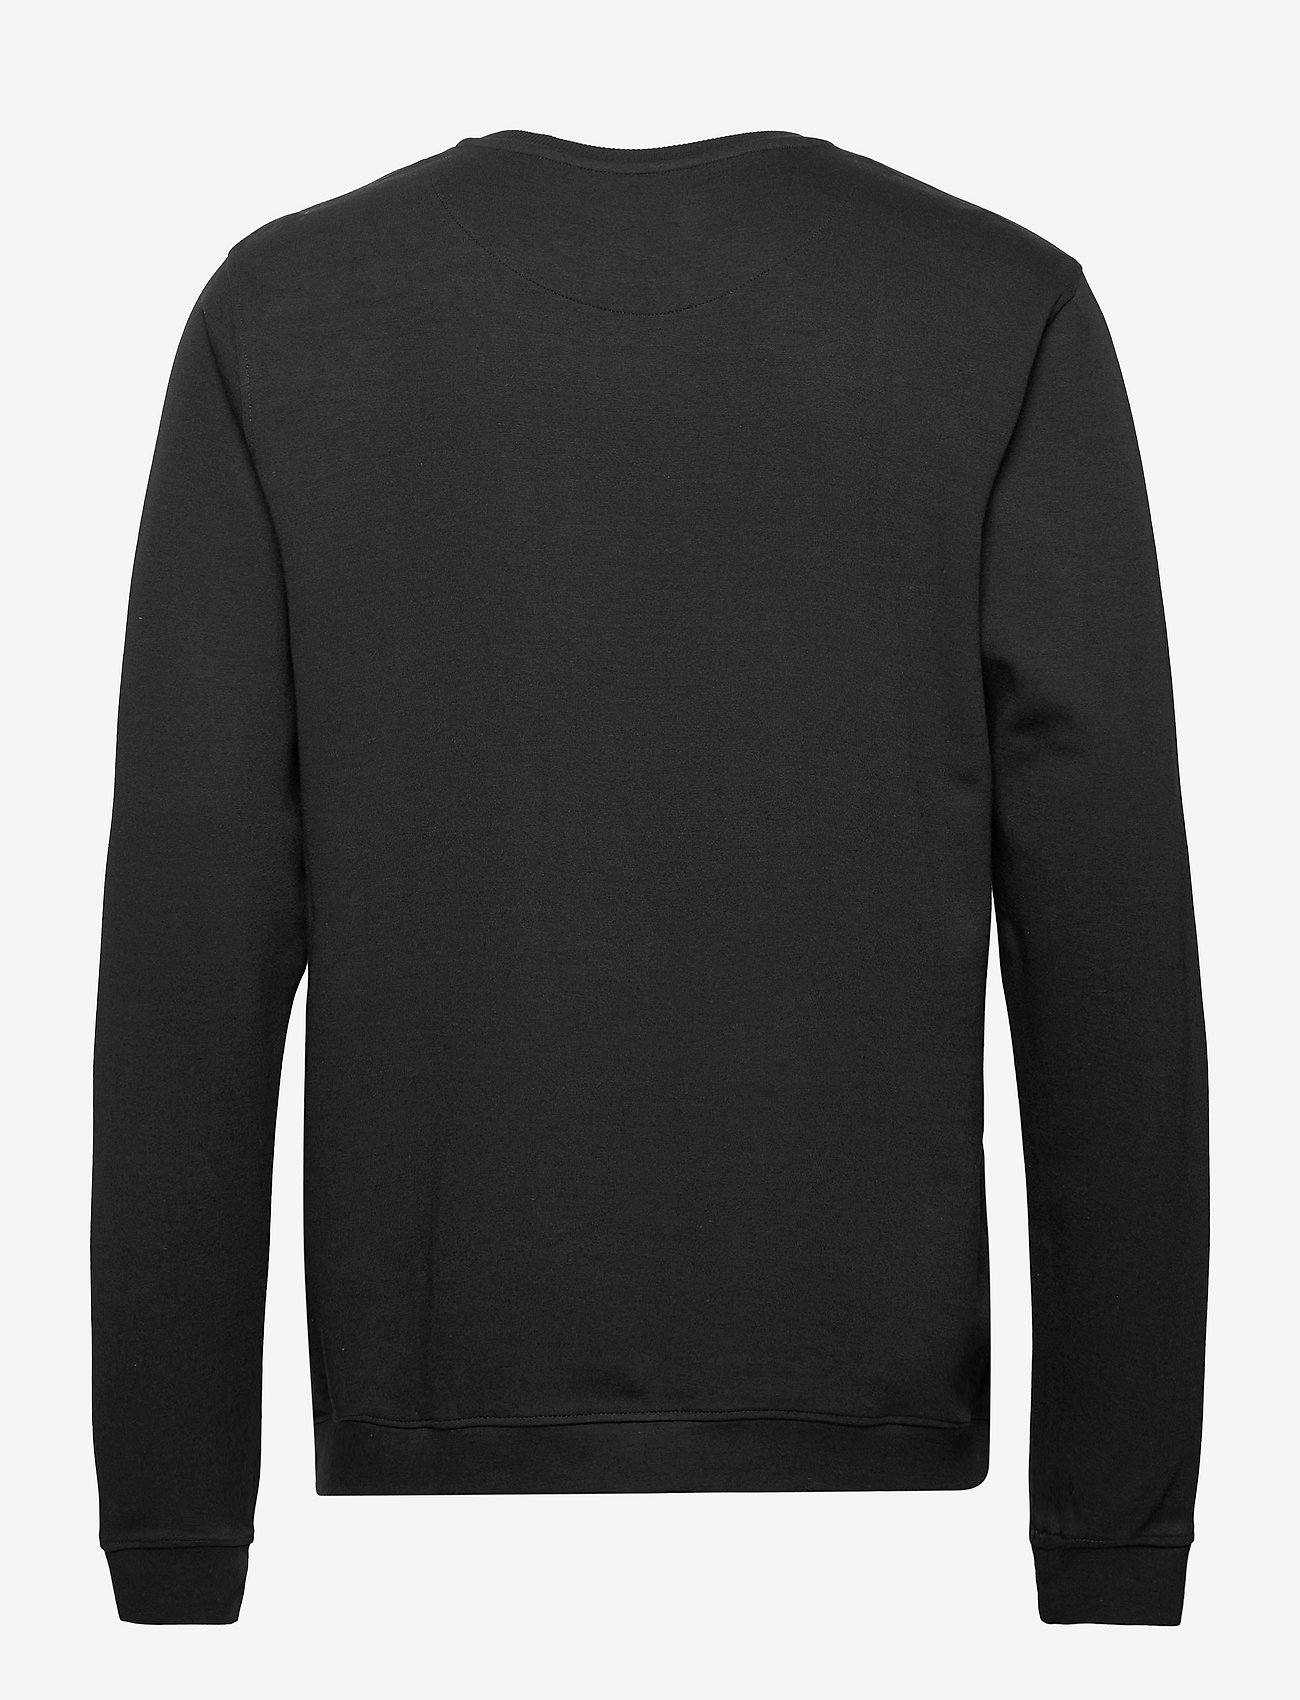 JBS of Denmark - JBS of DK sweatshirt FSC - truien - black - 1